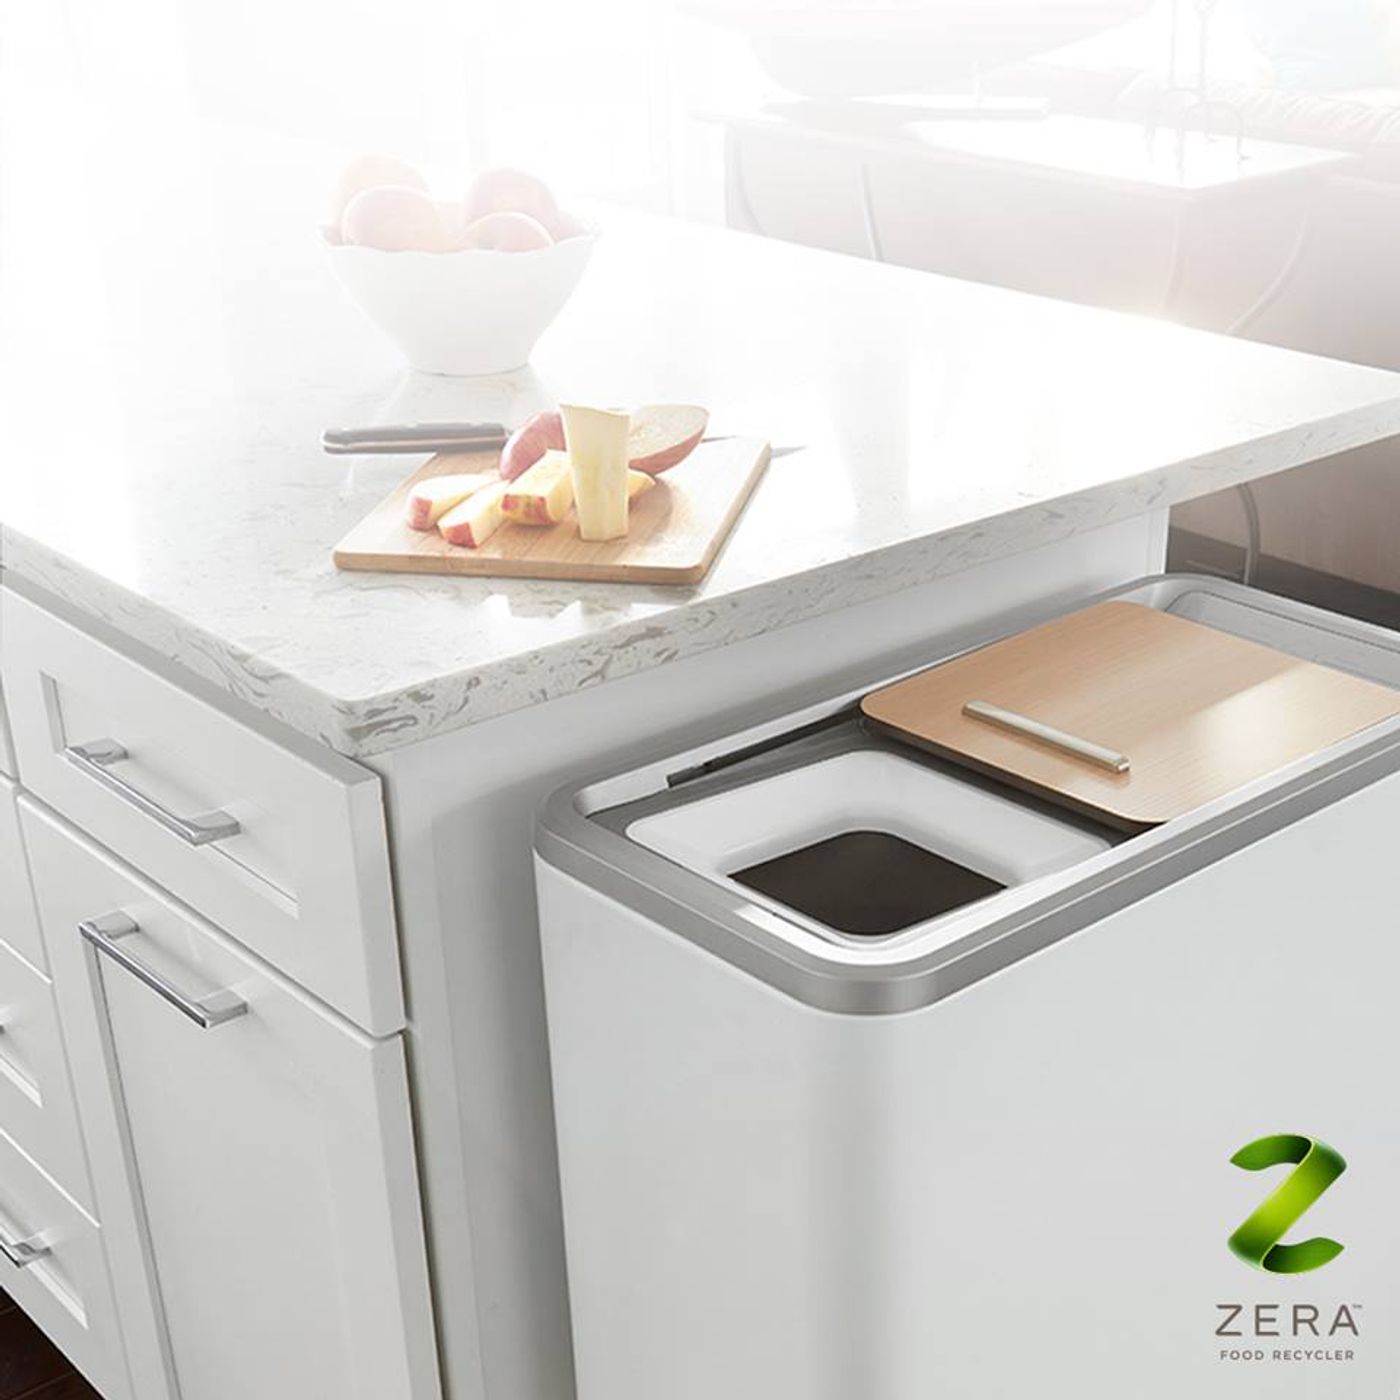 Zera™ Food Recycler, credit: WLabs Facebook